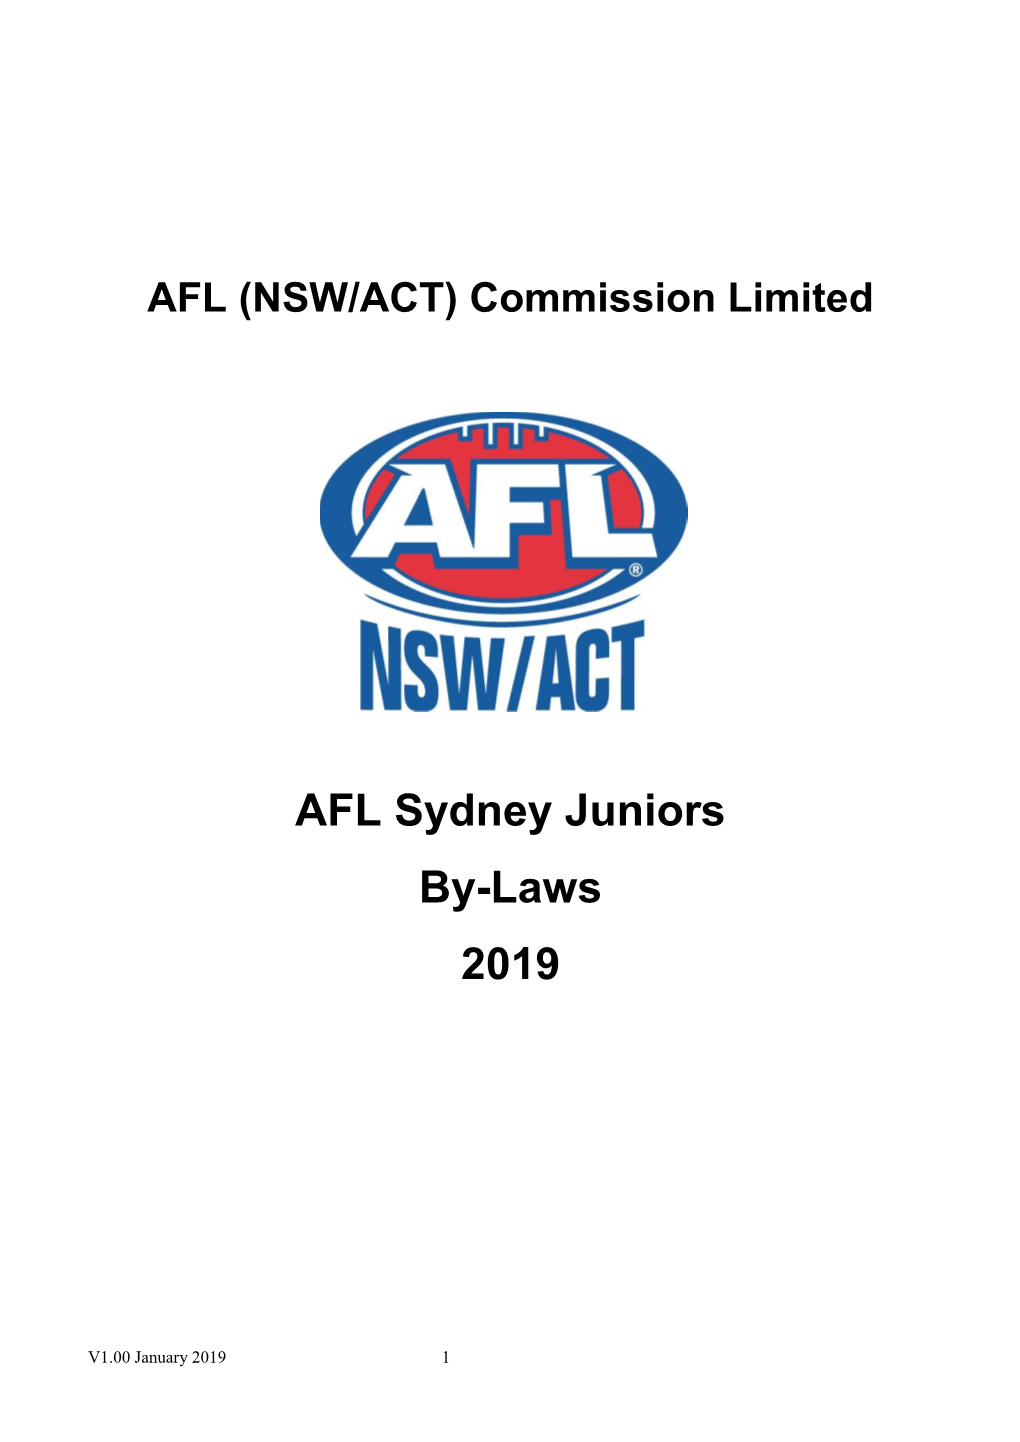 AFL Sydney Juniors By-Laws 2019